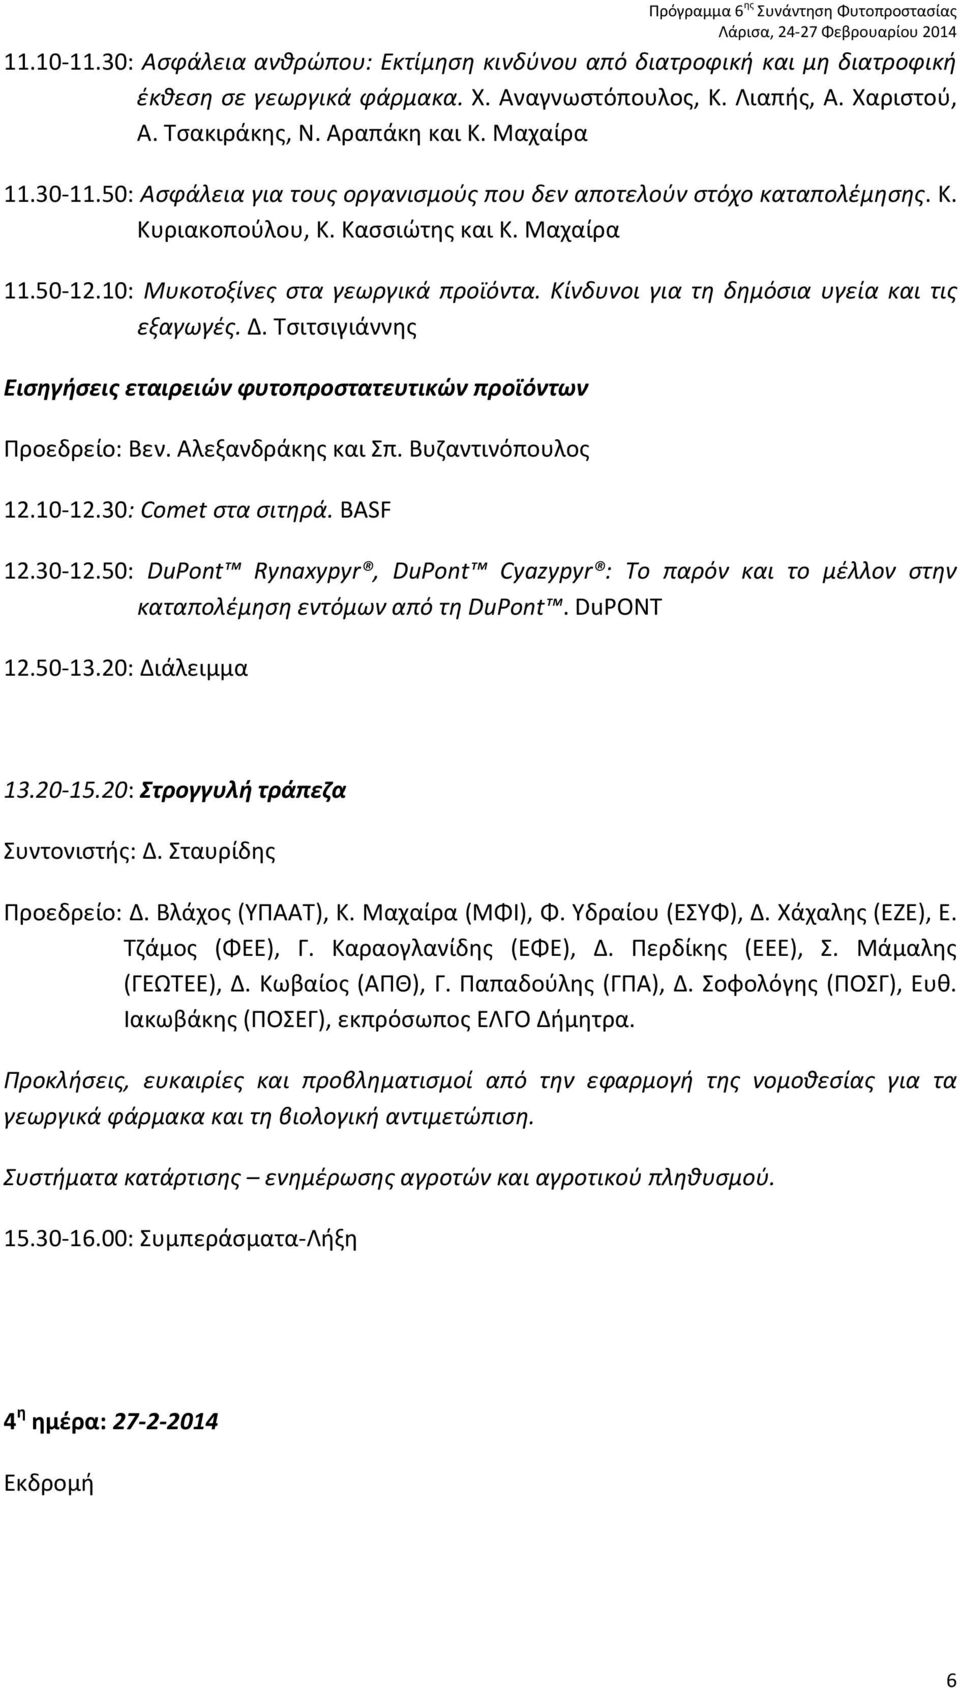 Κίνδυνοι για τη δημόσια υγεία και τις εξαγωγές. Δ. Τσιτσιγιάννης Εισηγήσεις εταιρειών φυτοπροστατευτικών προϊόντων Προεδρείο: Βεν. Αλεξανδράκης και Σπ. Βυζαντινόπουλος 12.10-12.30: Comet στα σιτηρά.